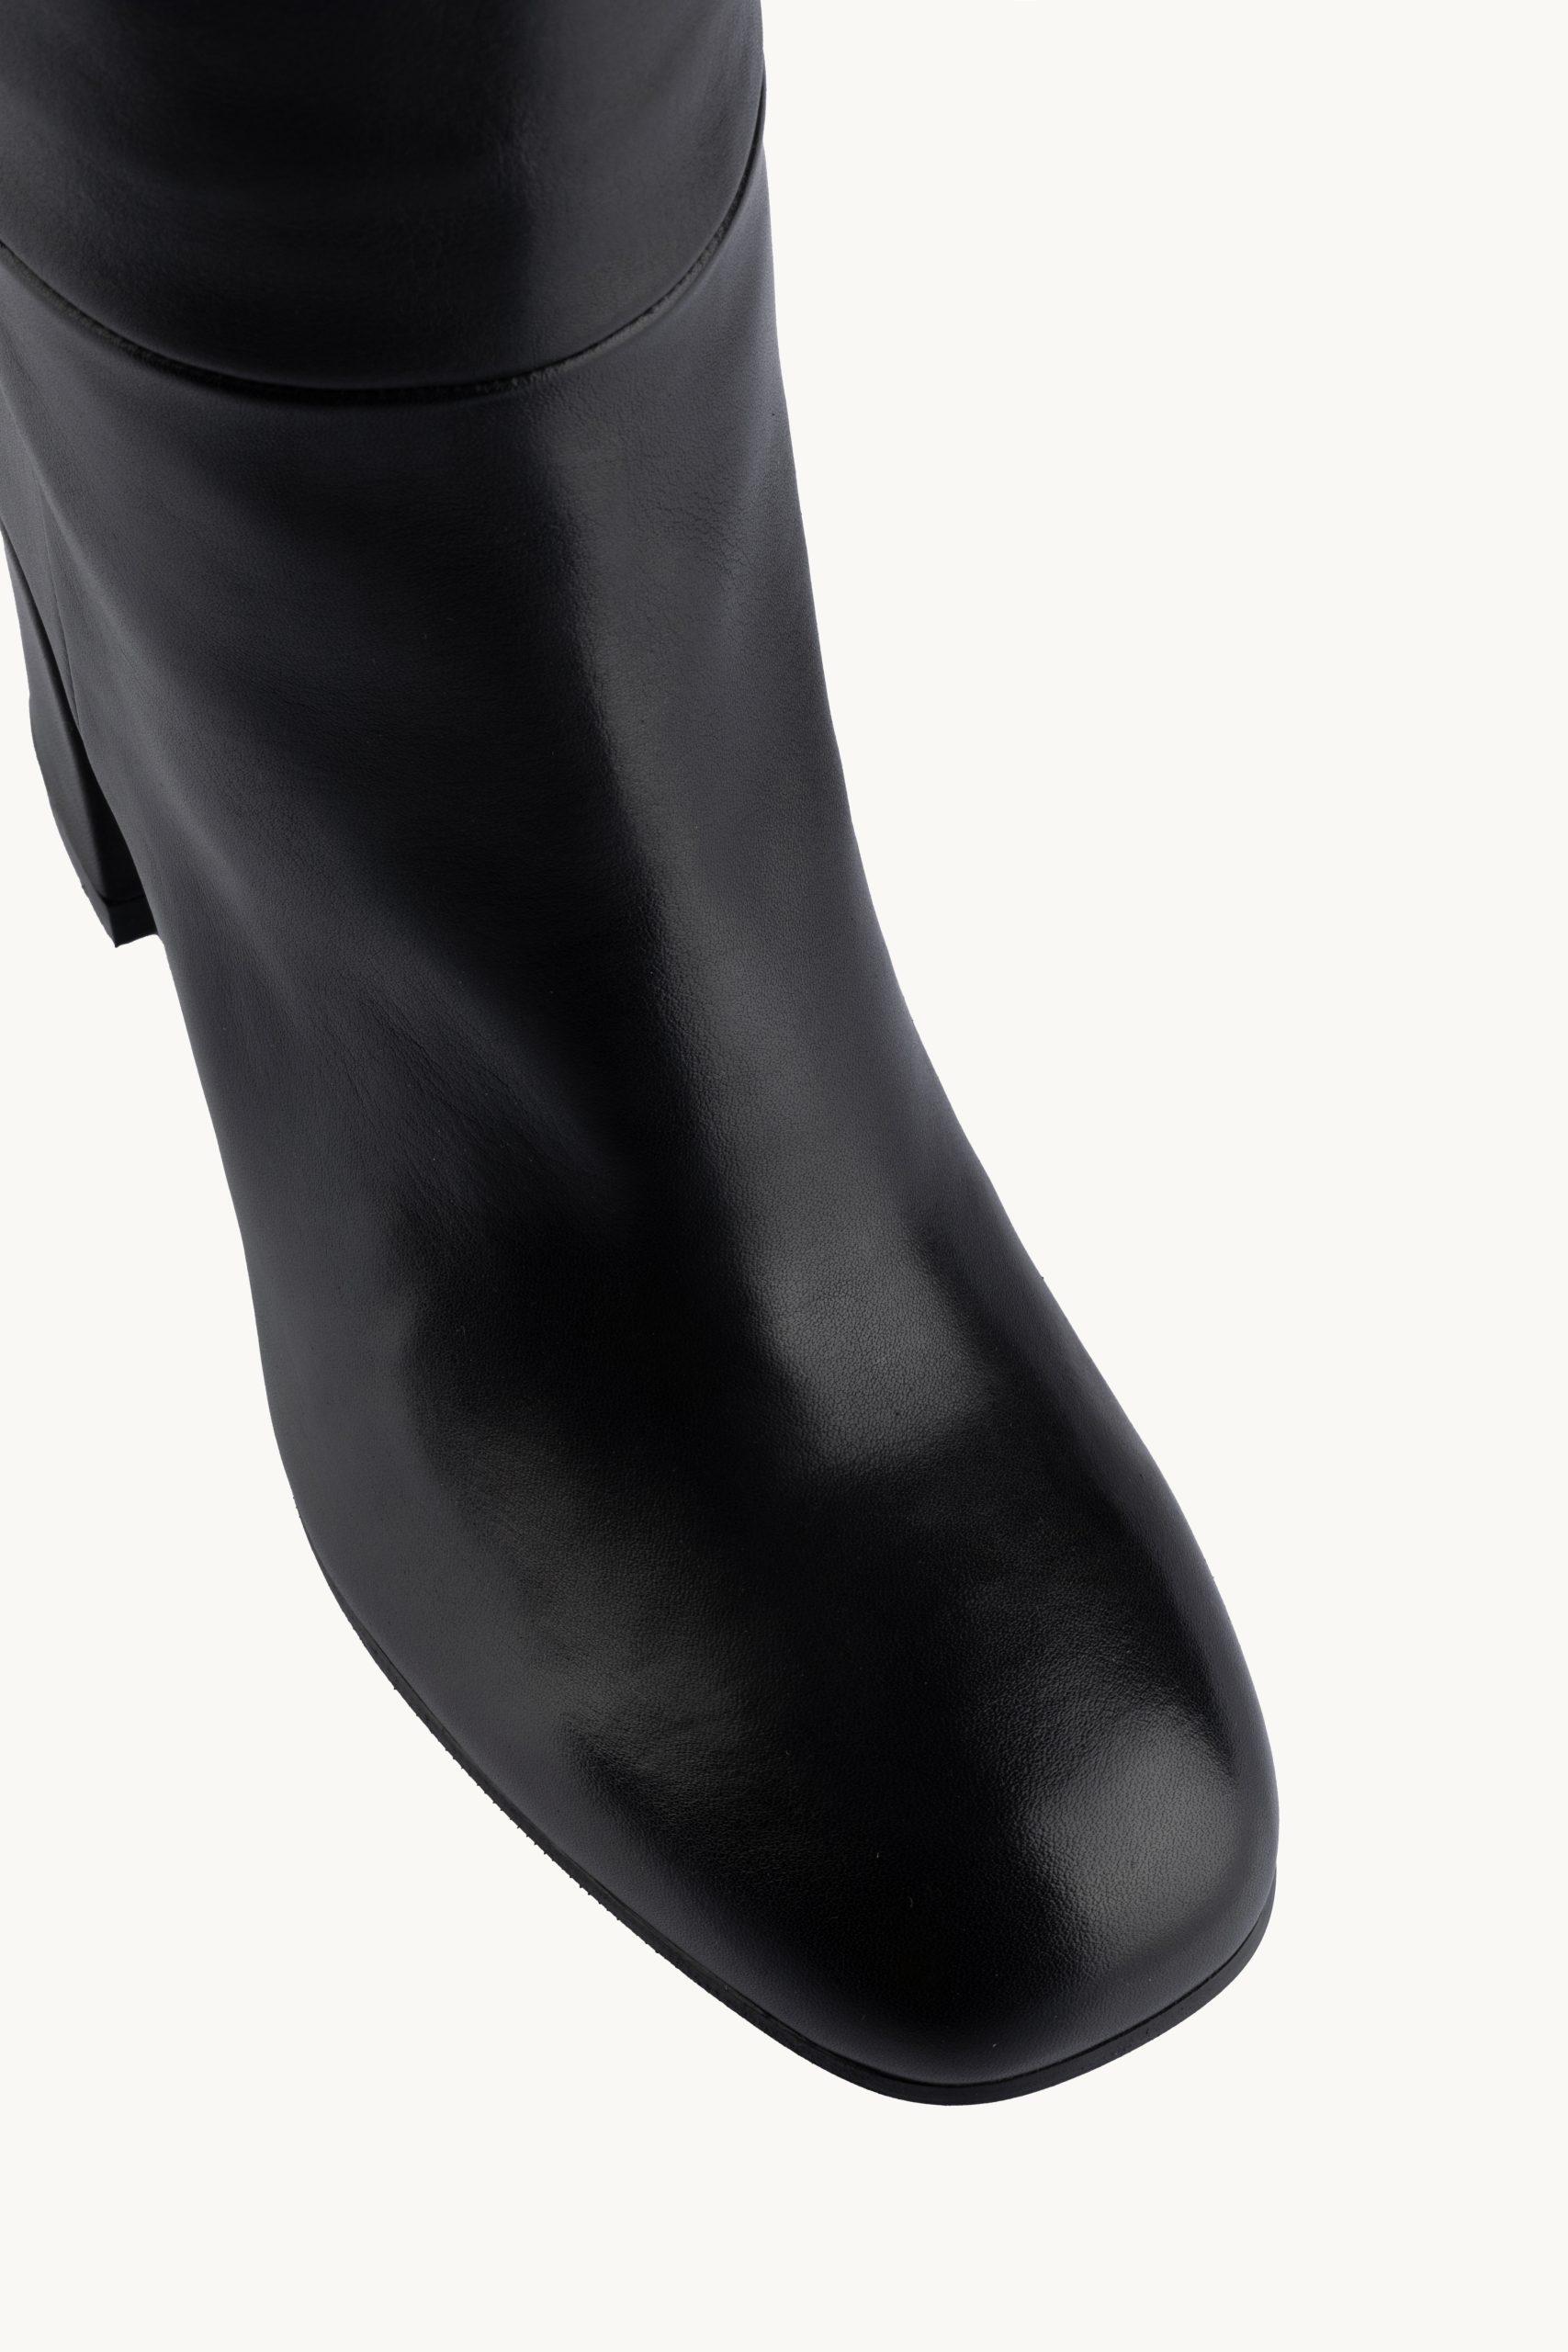 Duge čizme - Dark Comfort su udobne duboke crne čizme od prirodne kože sa četvrtastom petom i četvrtastim vrhom.